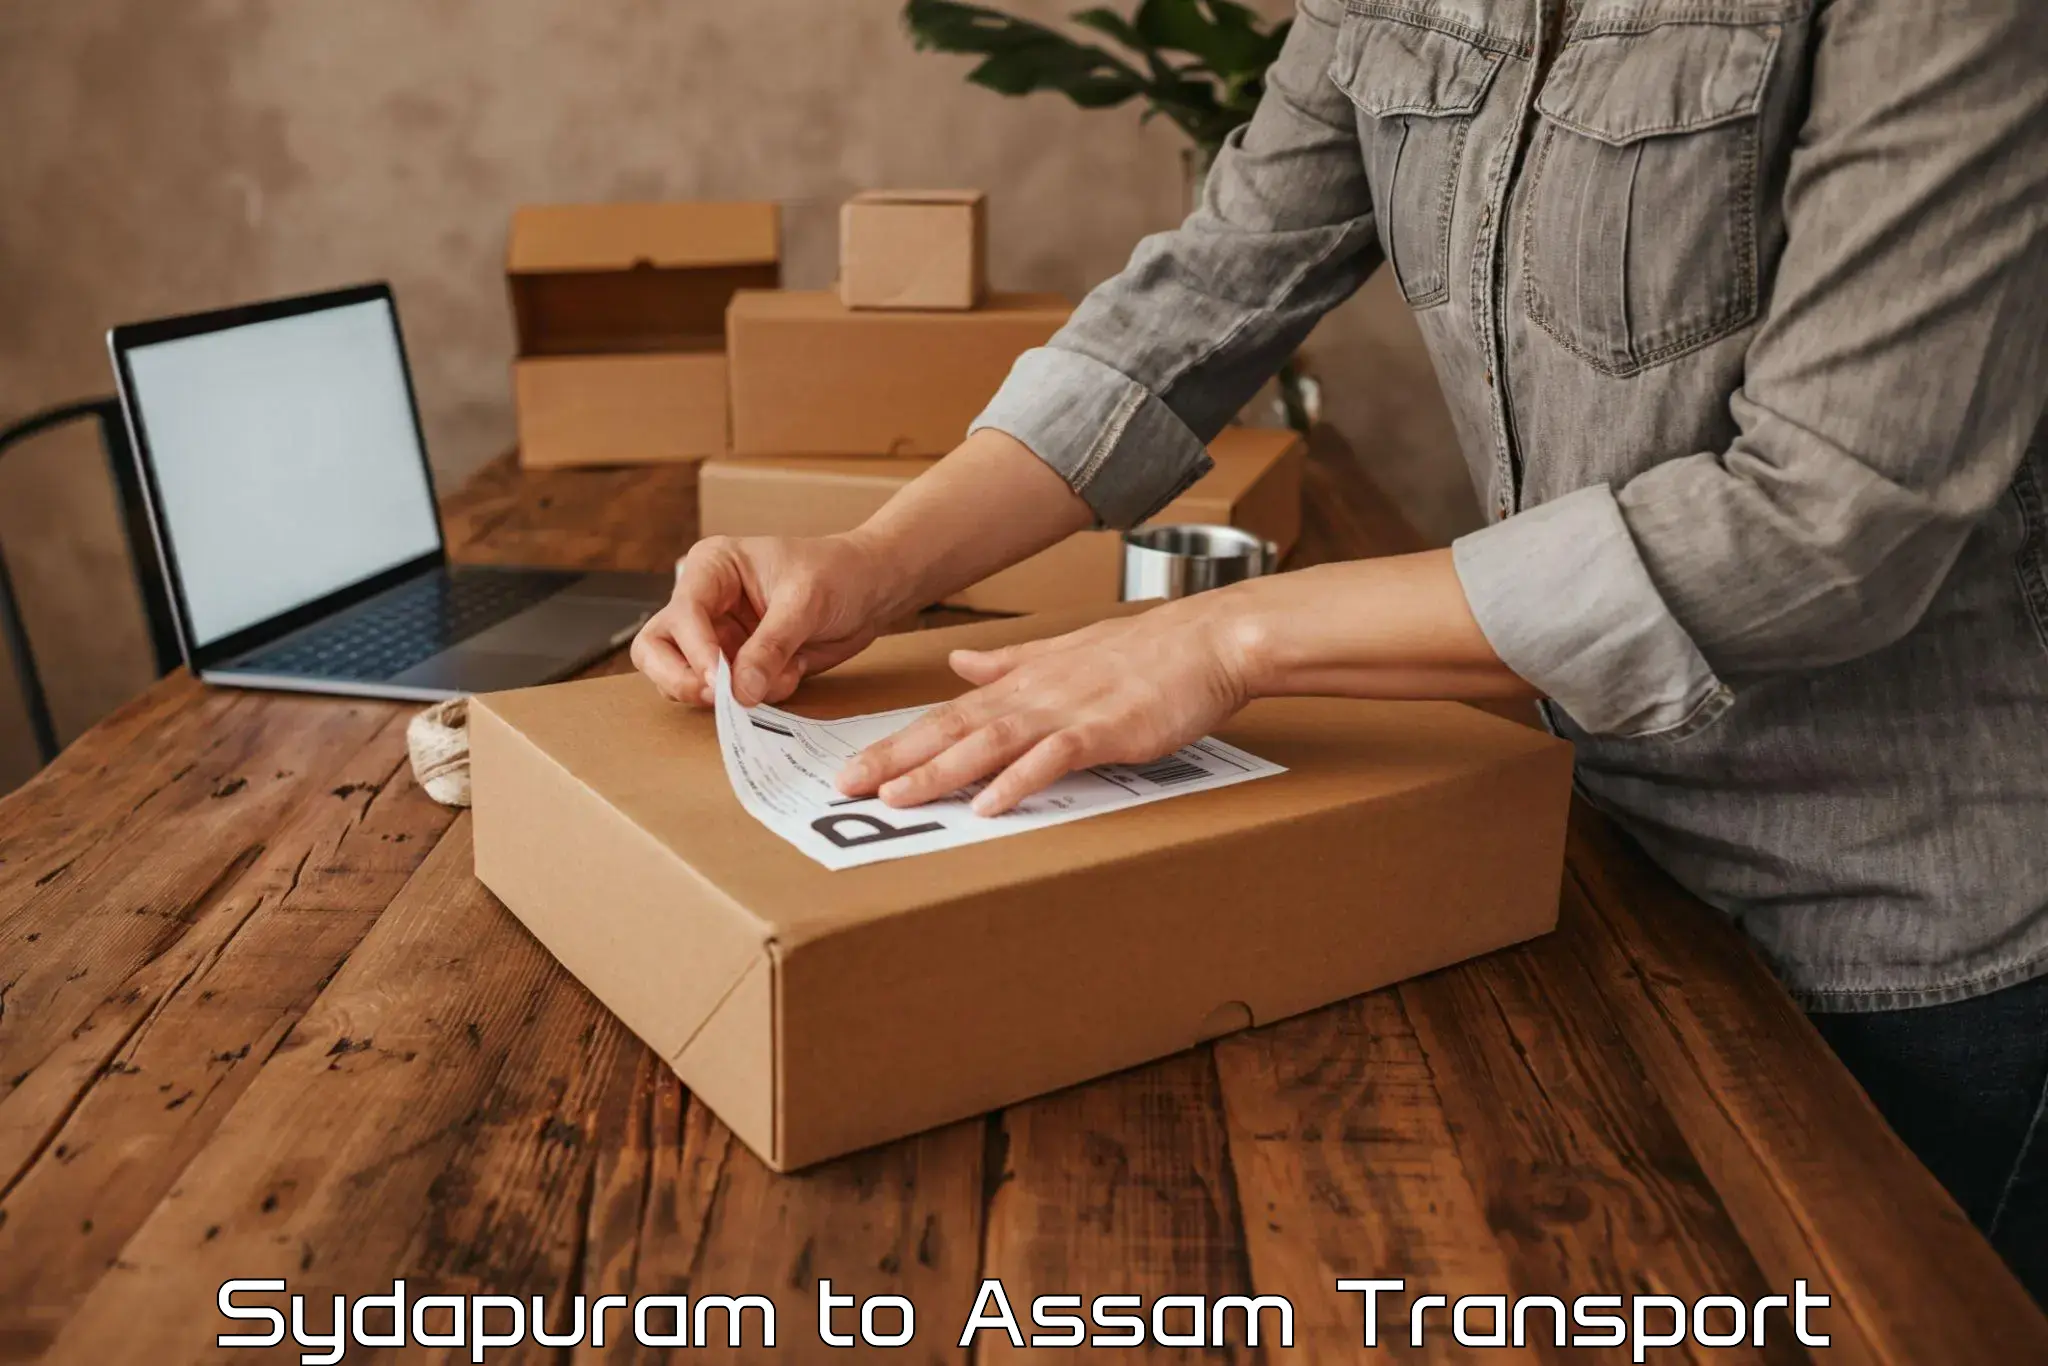 Nearby transport service Sydapuram to Assam